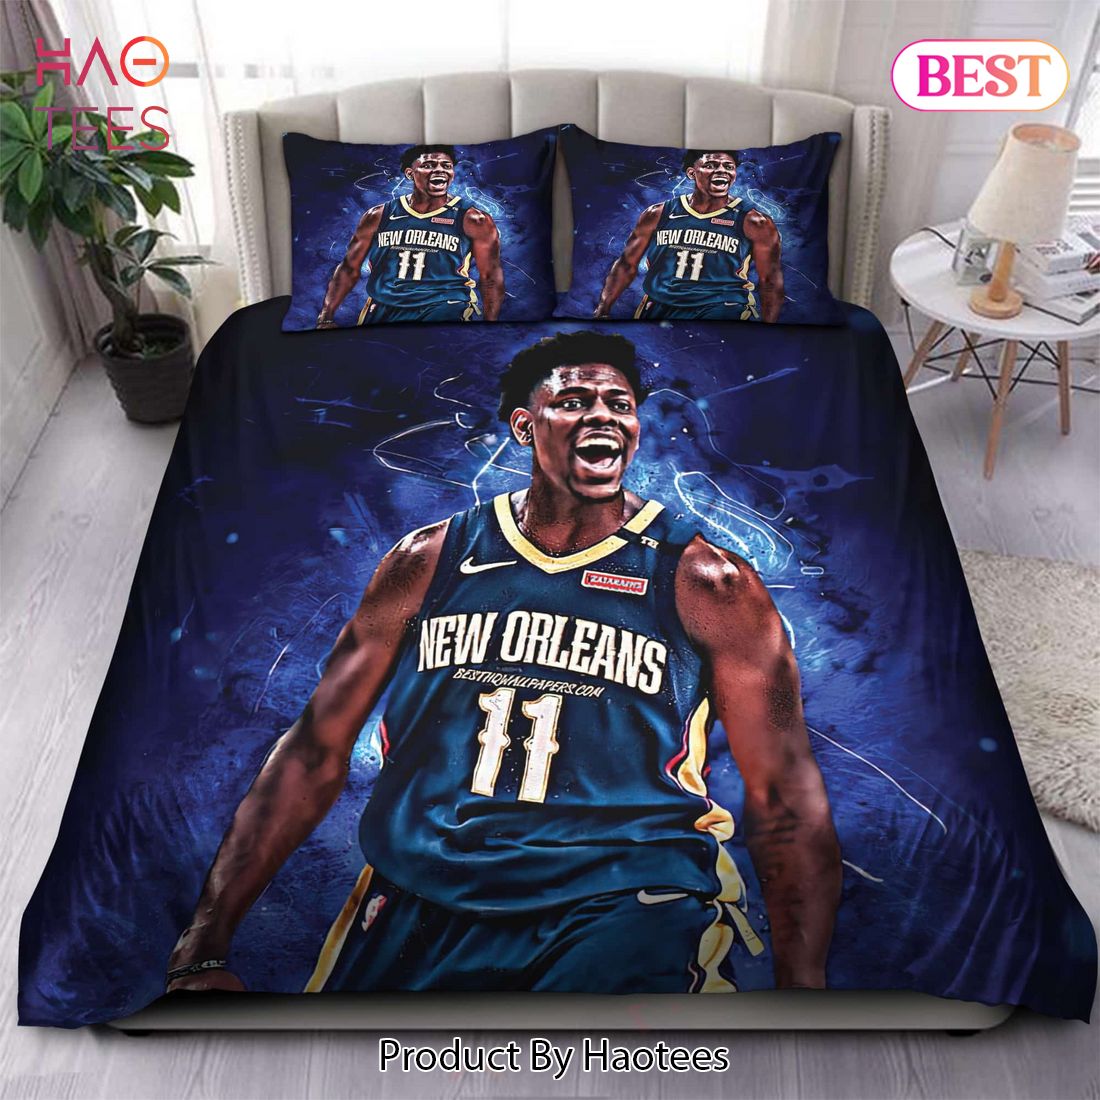 Buy Jrue Holiday Milwaukee Bucks NBA 20 Bedding Sets Bed Sets, Bedroom Sets, Comforter Sets, Duvet Cover, Bedspread